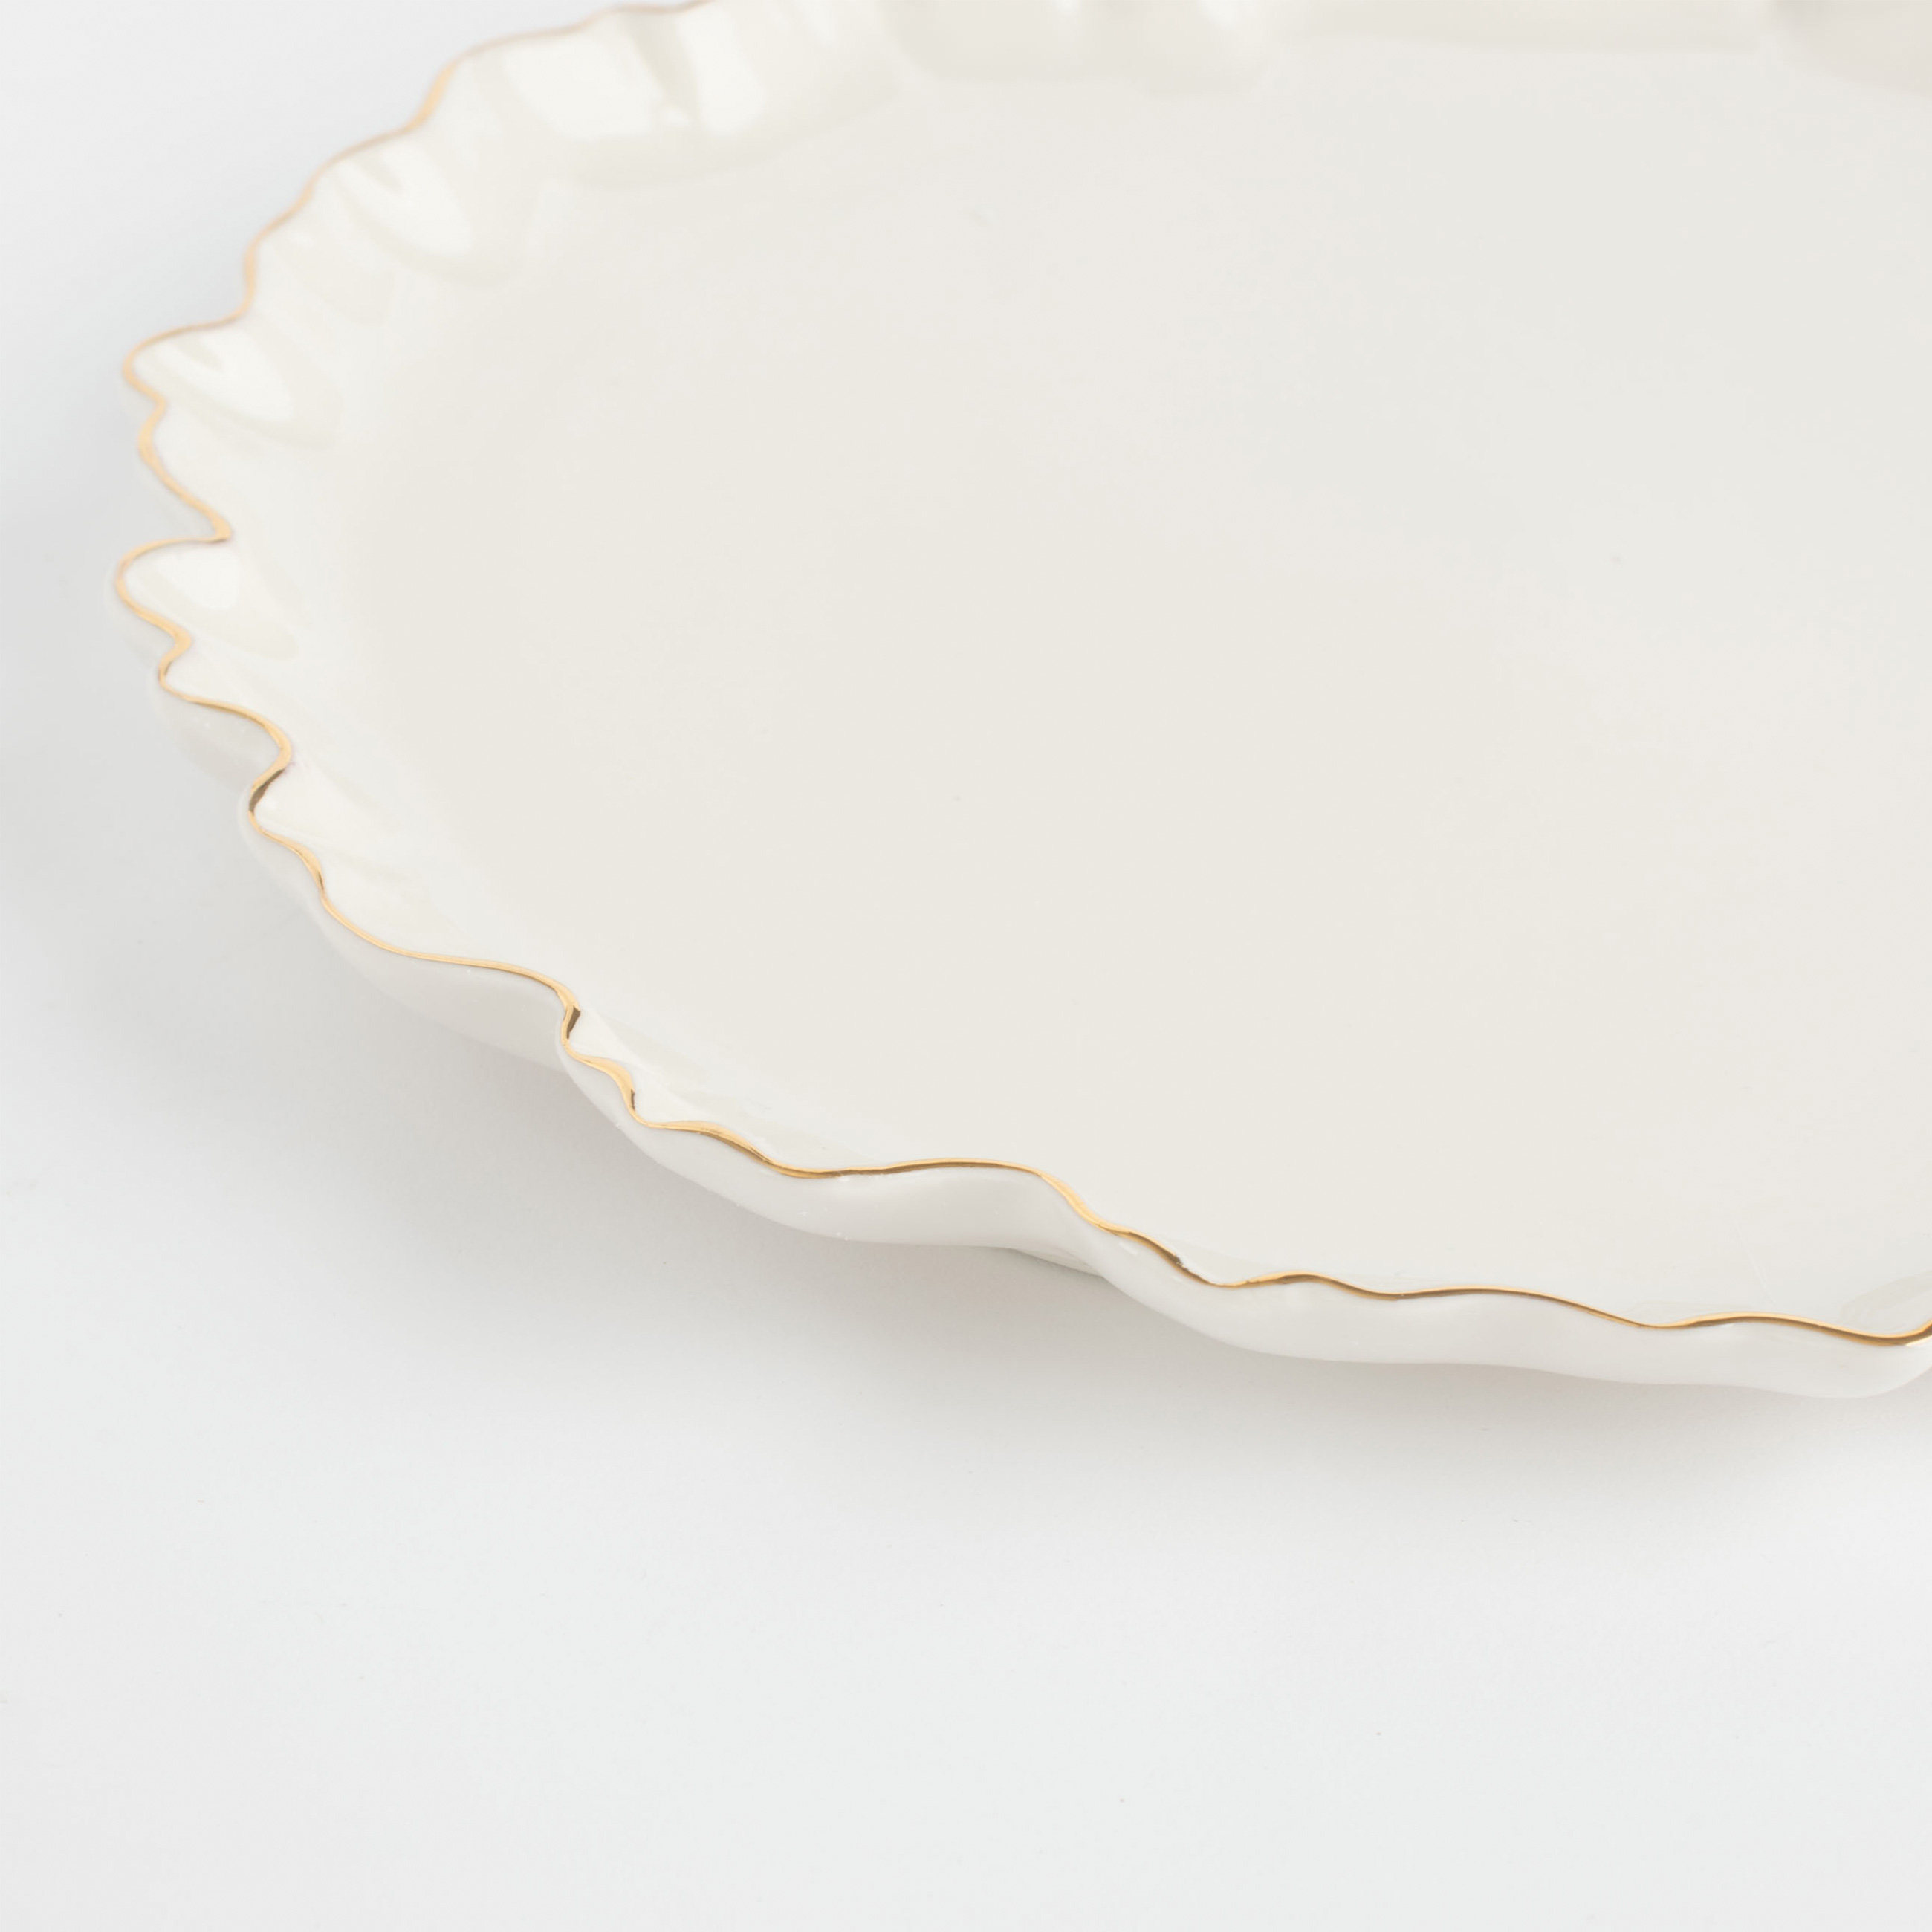 Тарелка обеденная, 25 см, фарфор Р, с золотистым кантом, Мятый эффект, Crumple gold изображение № 5